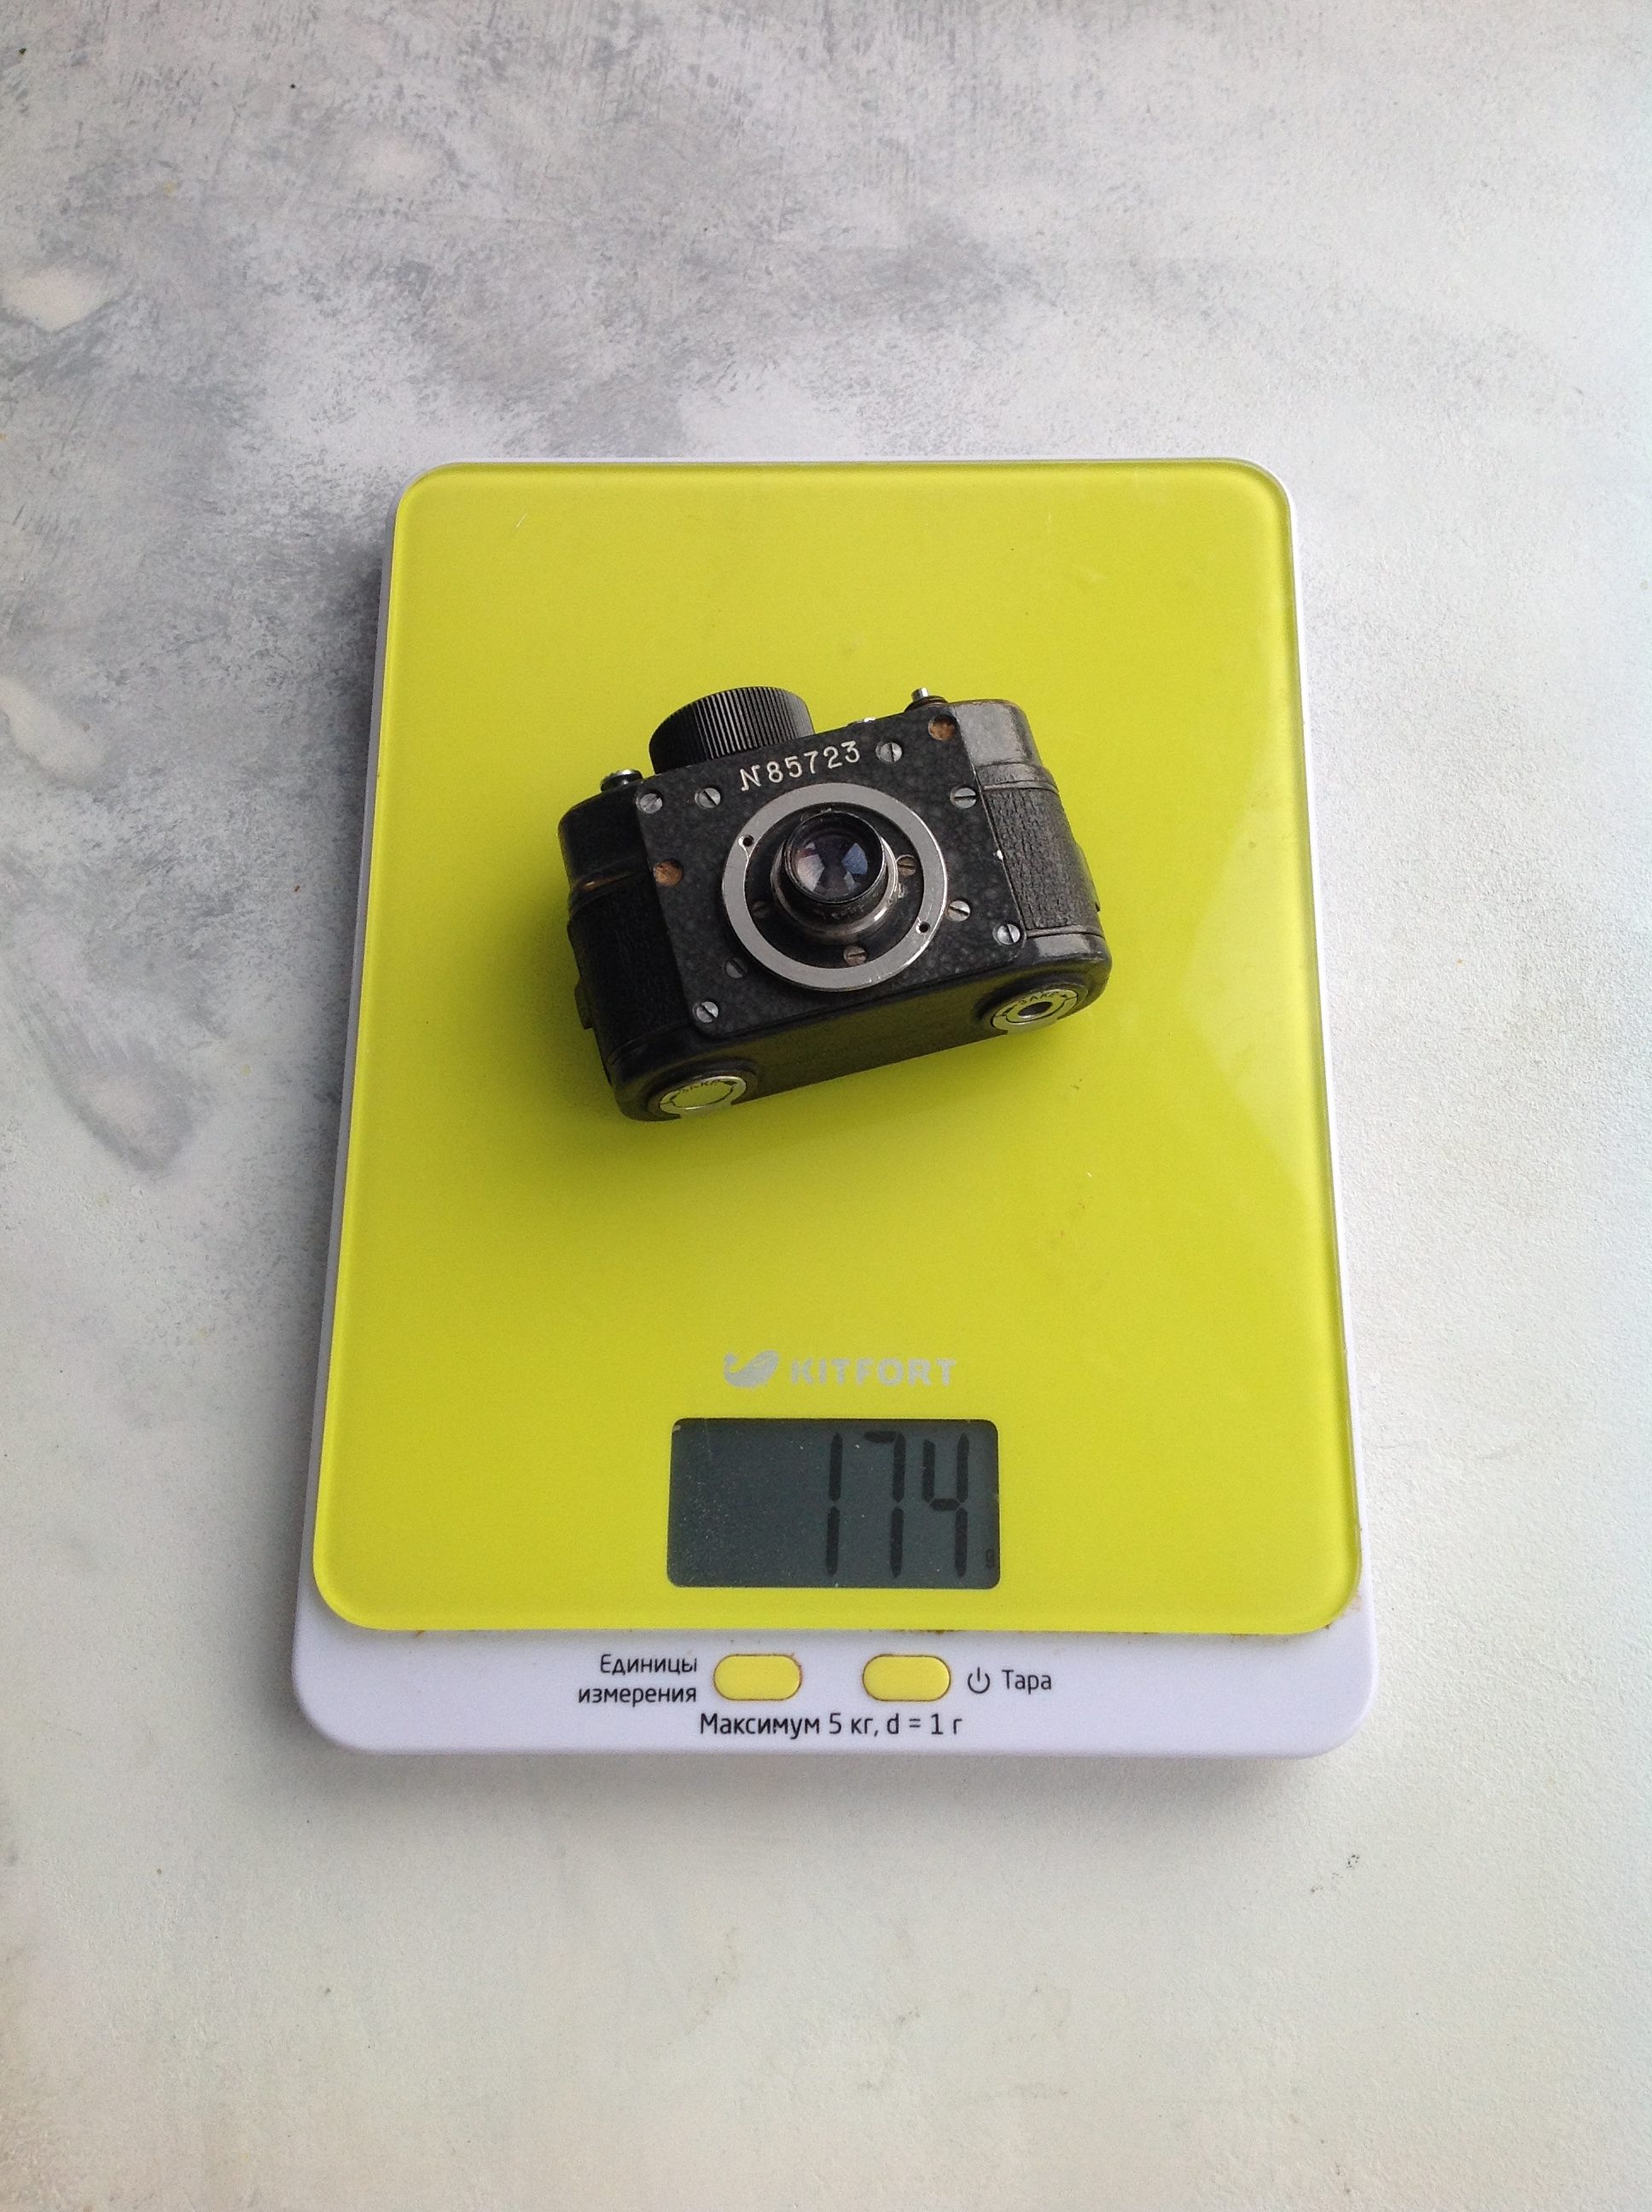 mažos šnipinėjimo kameros svoris